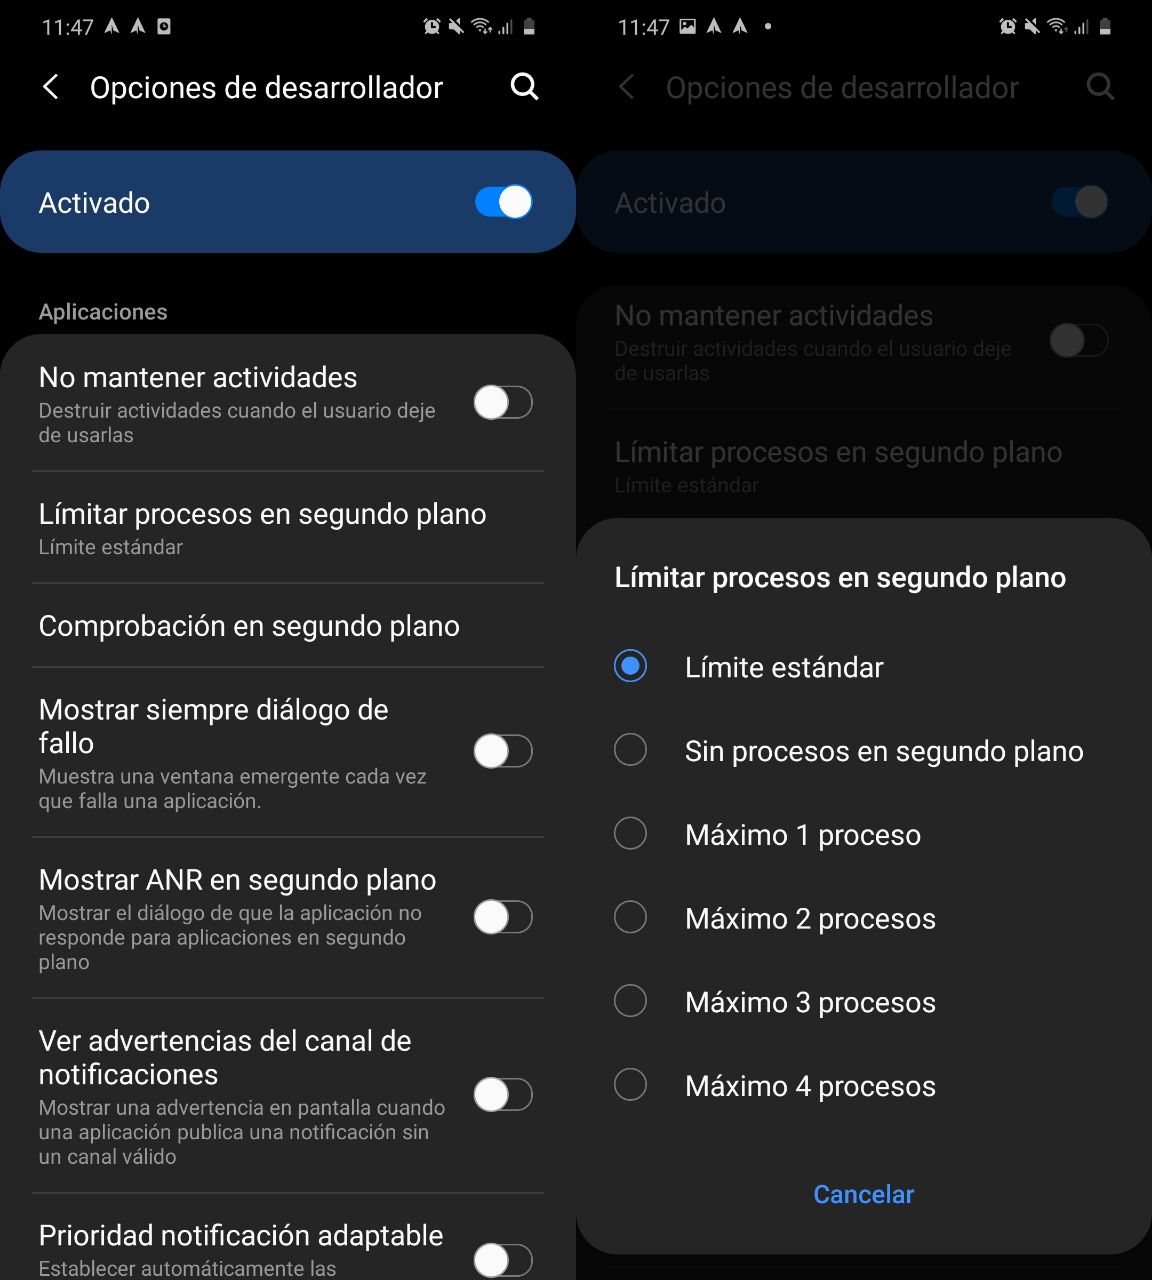 4 trucos ocultos para mejorar el rendimiento de tu móvil Android - Xpress Online El Salvador